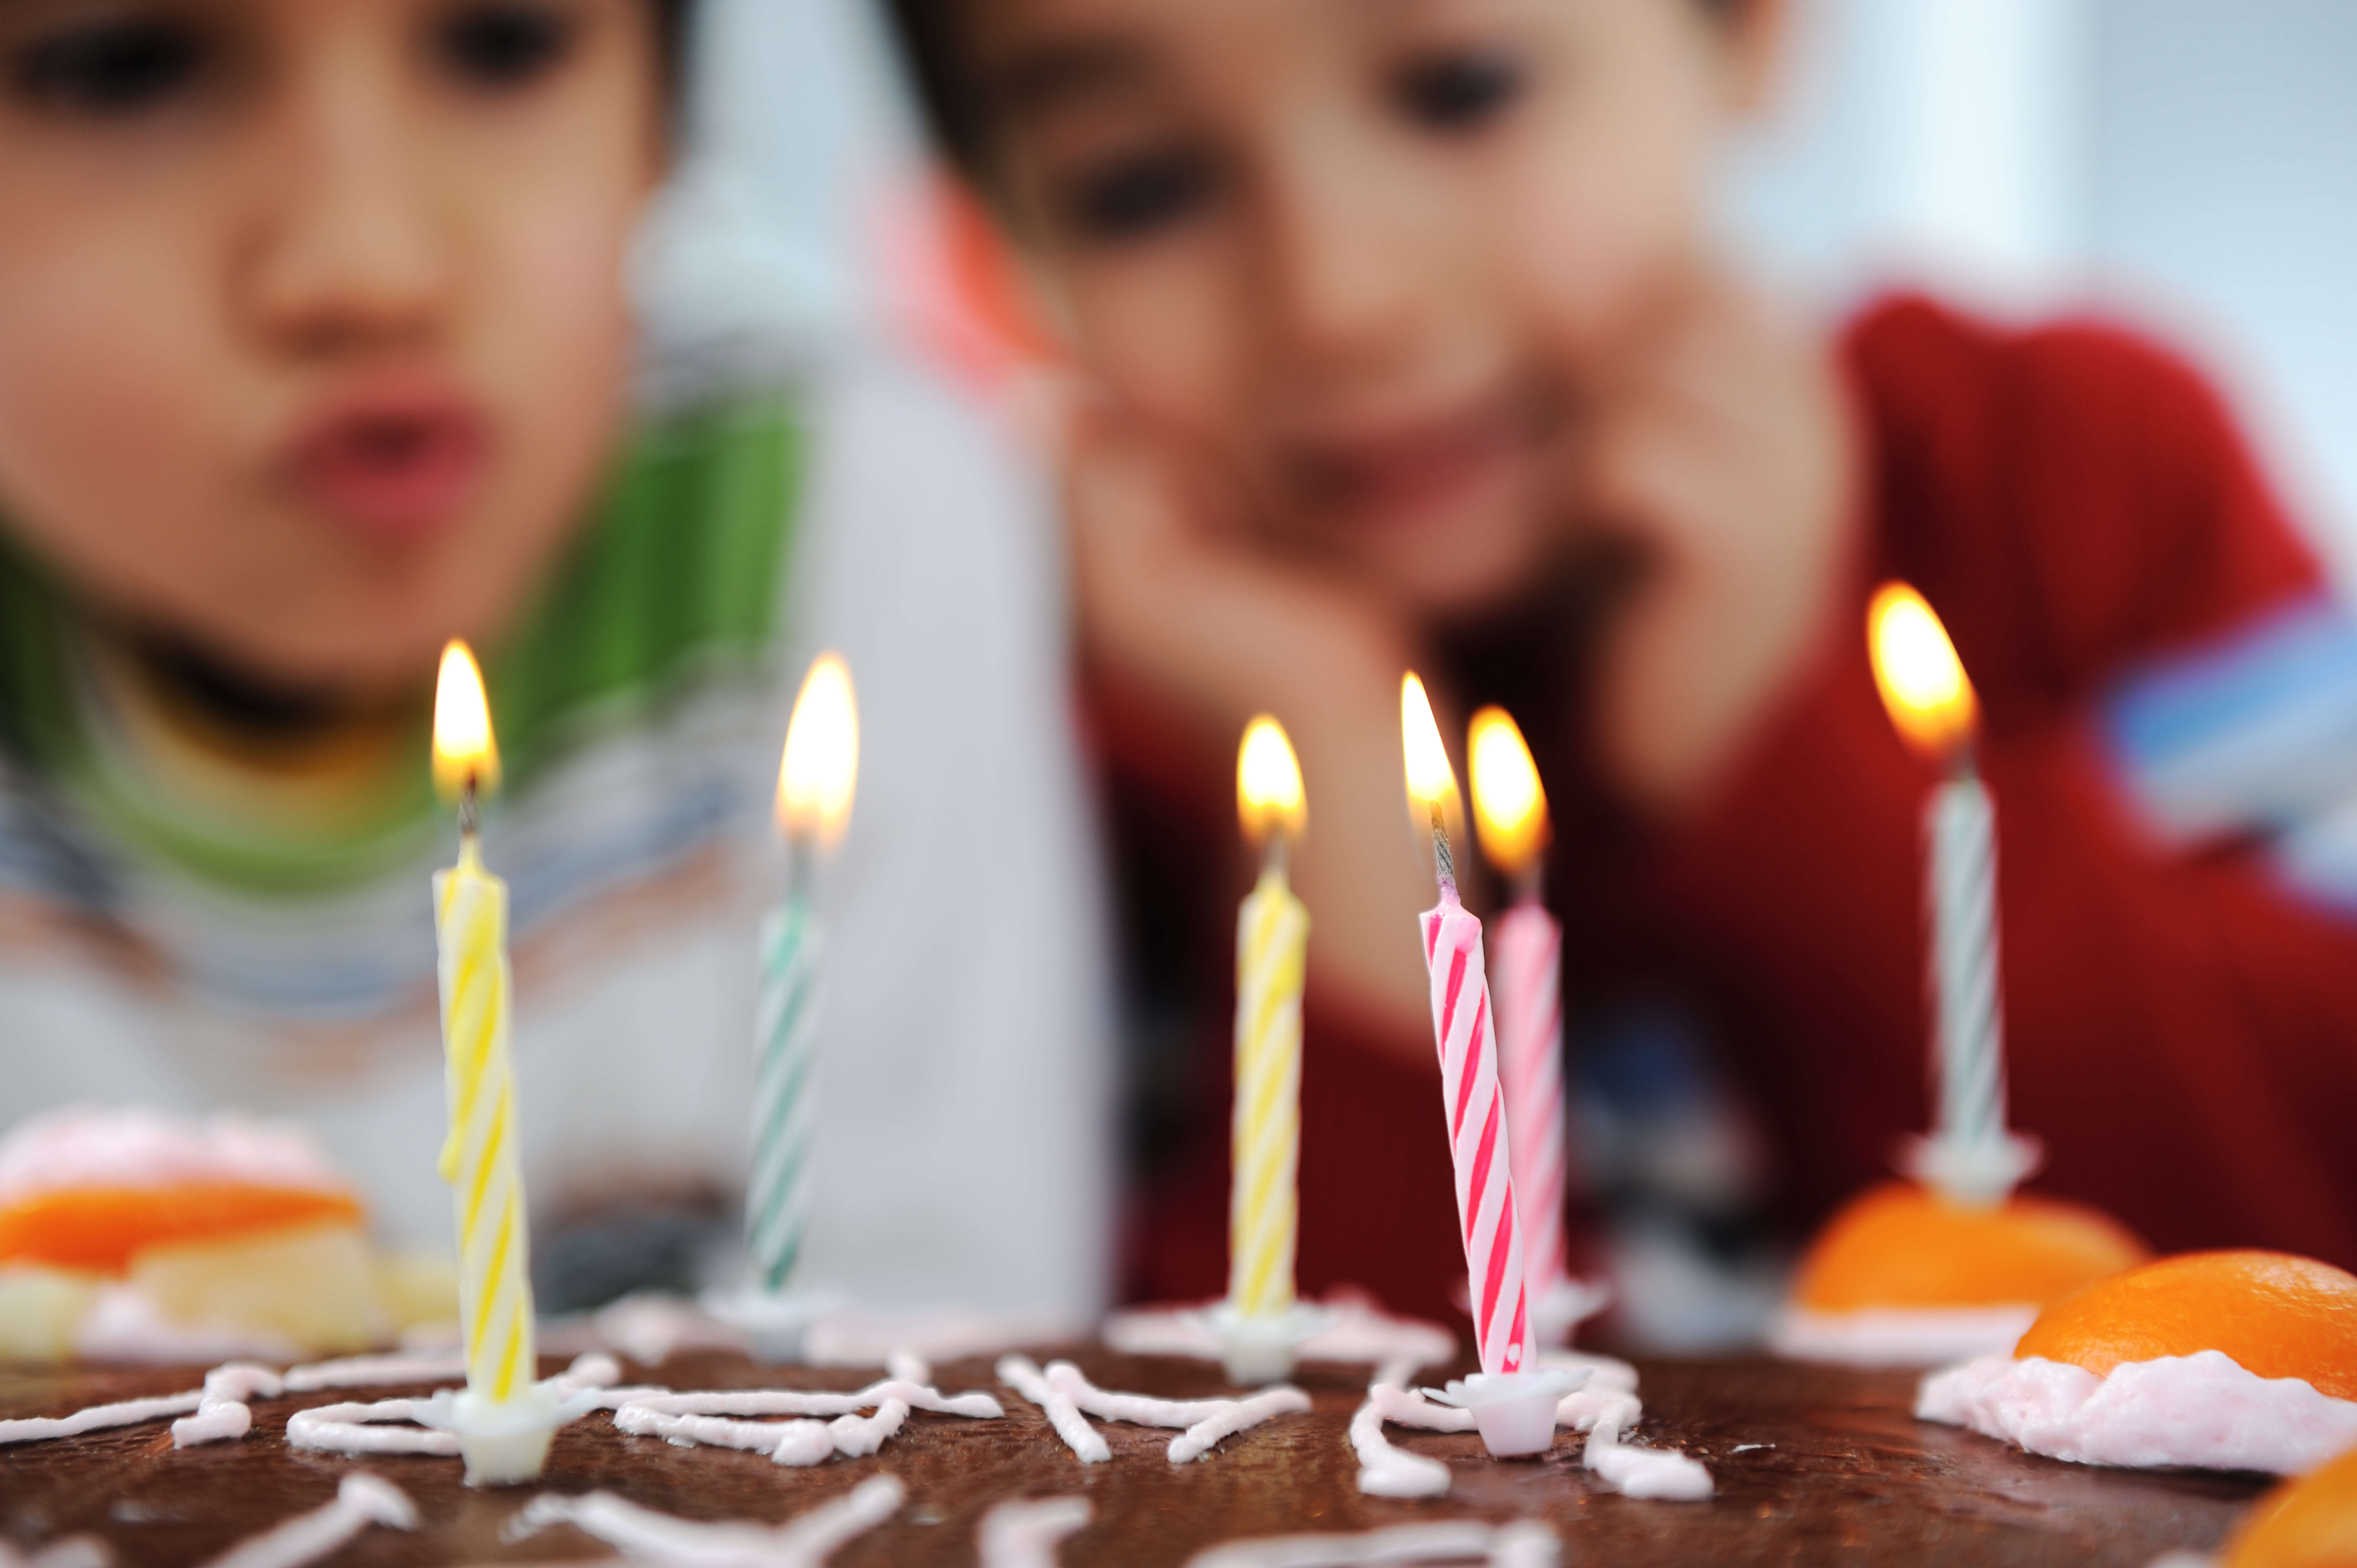 A birthday. Свечи для торта. Ребенок задувает свечи на торте. Тортик со свечками. Свеча в торт "с днем рождения".